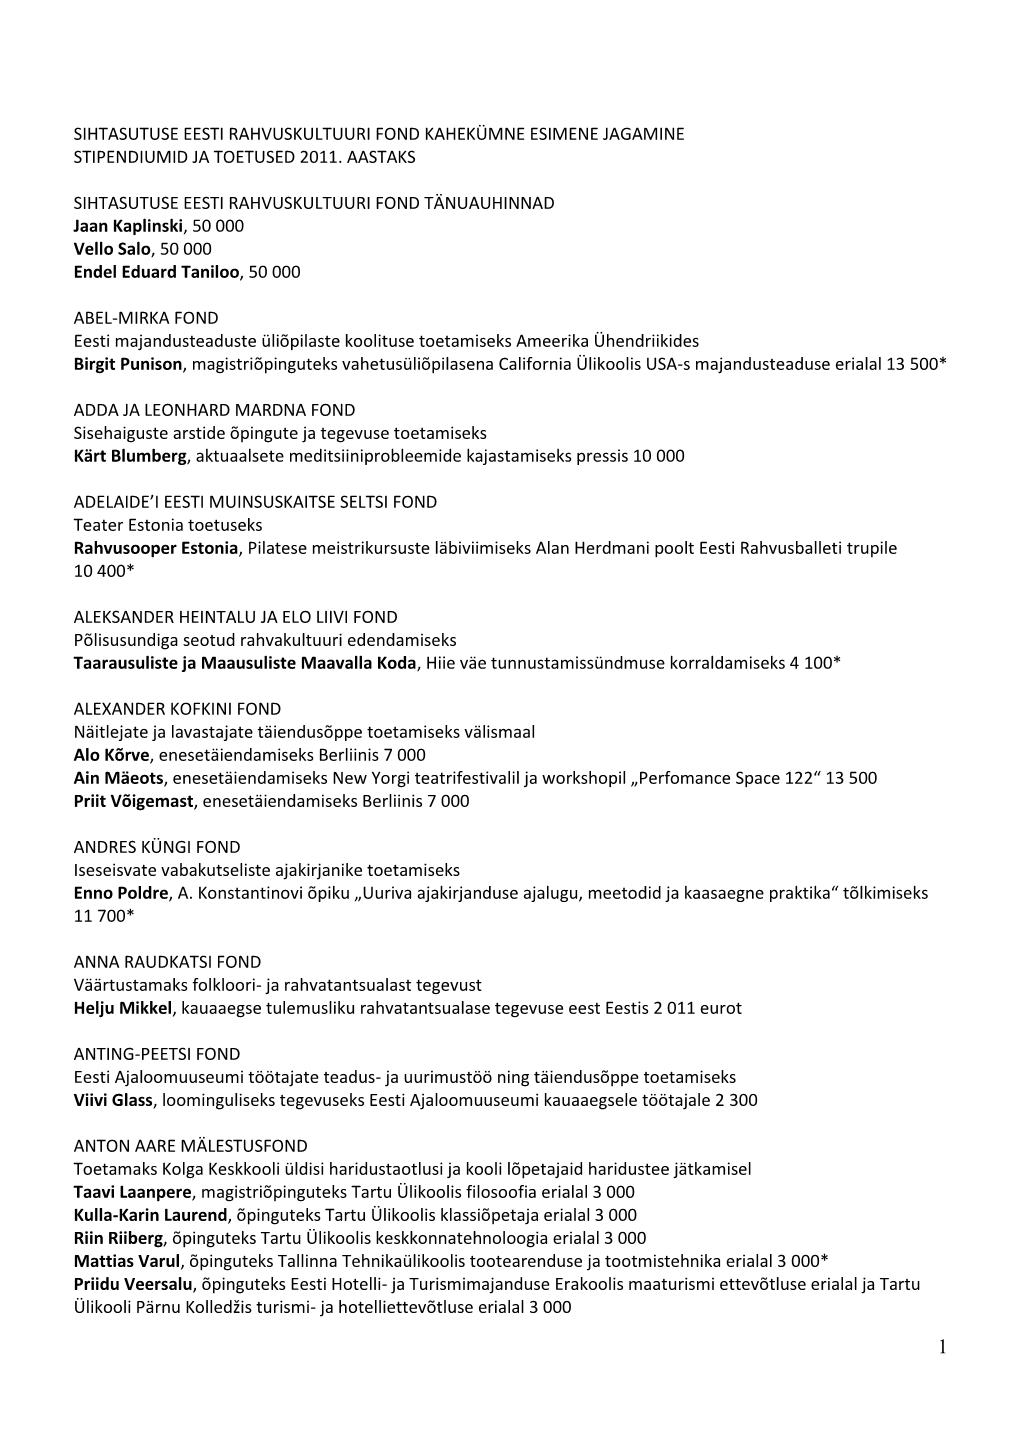 Sihtasutuse Eesti Rahvuskultuuri Fond Kahekümne Esimene Jagamine Stipendiumid Ja Toetused 2011